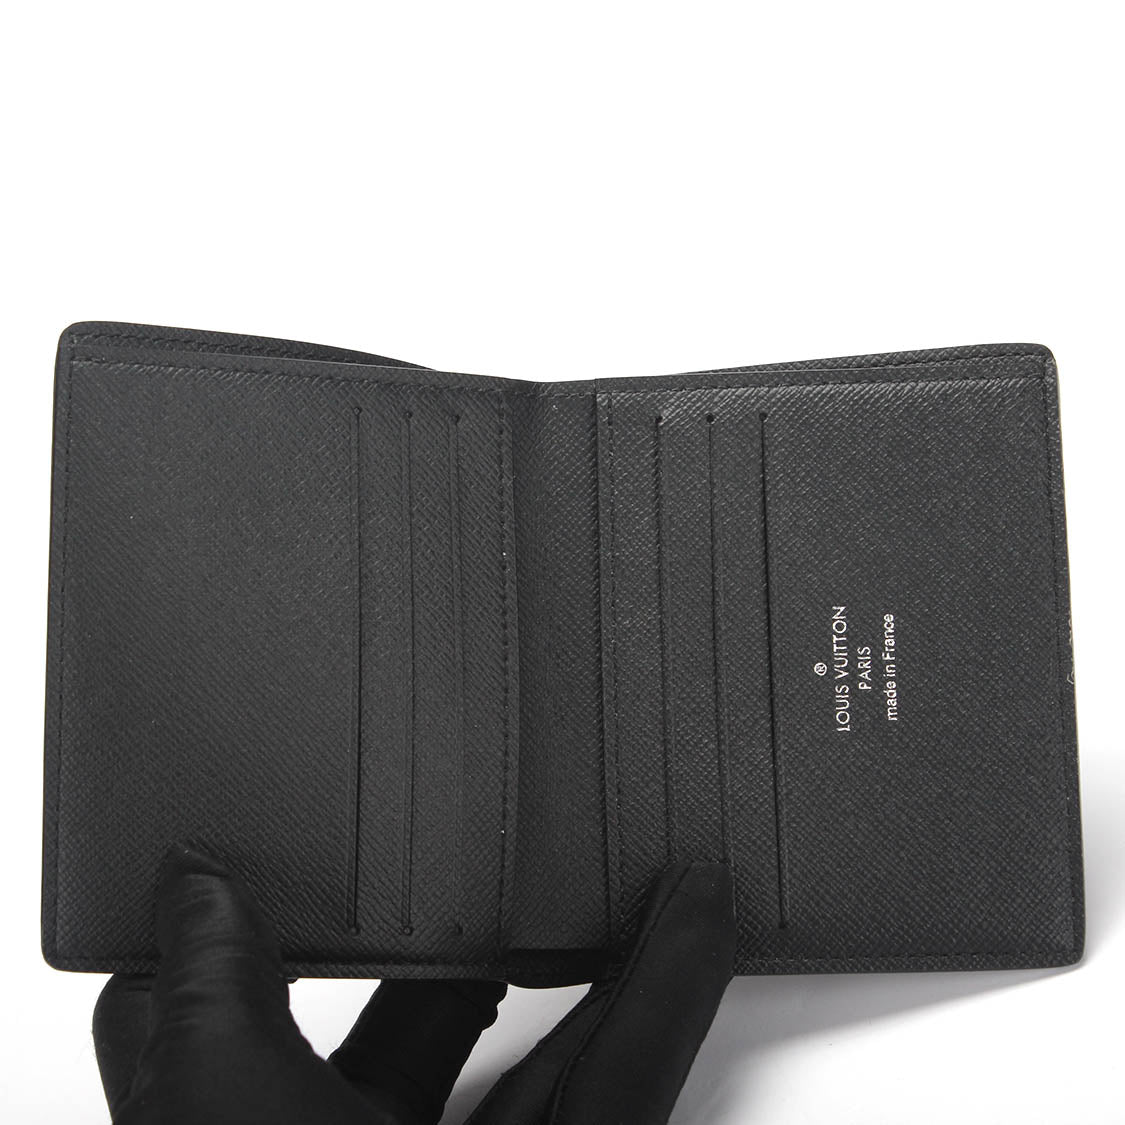 Louis Vuitton compact 6cc men's wallet damier graphite, Luxury